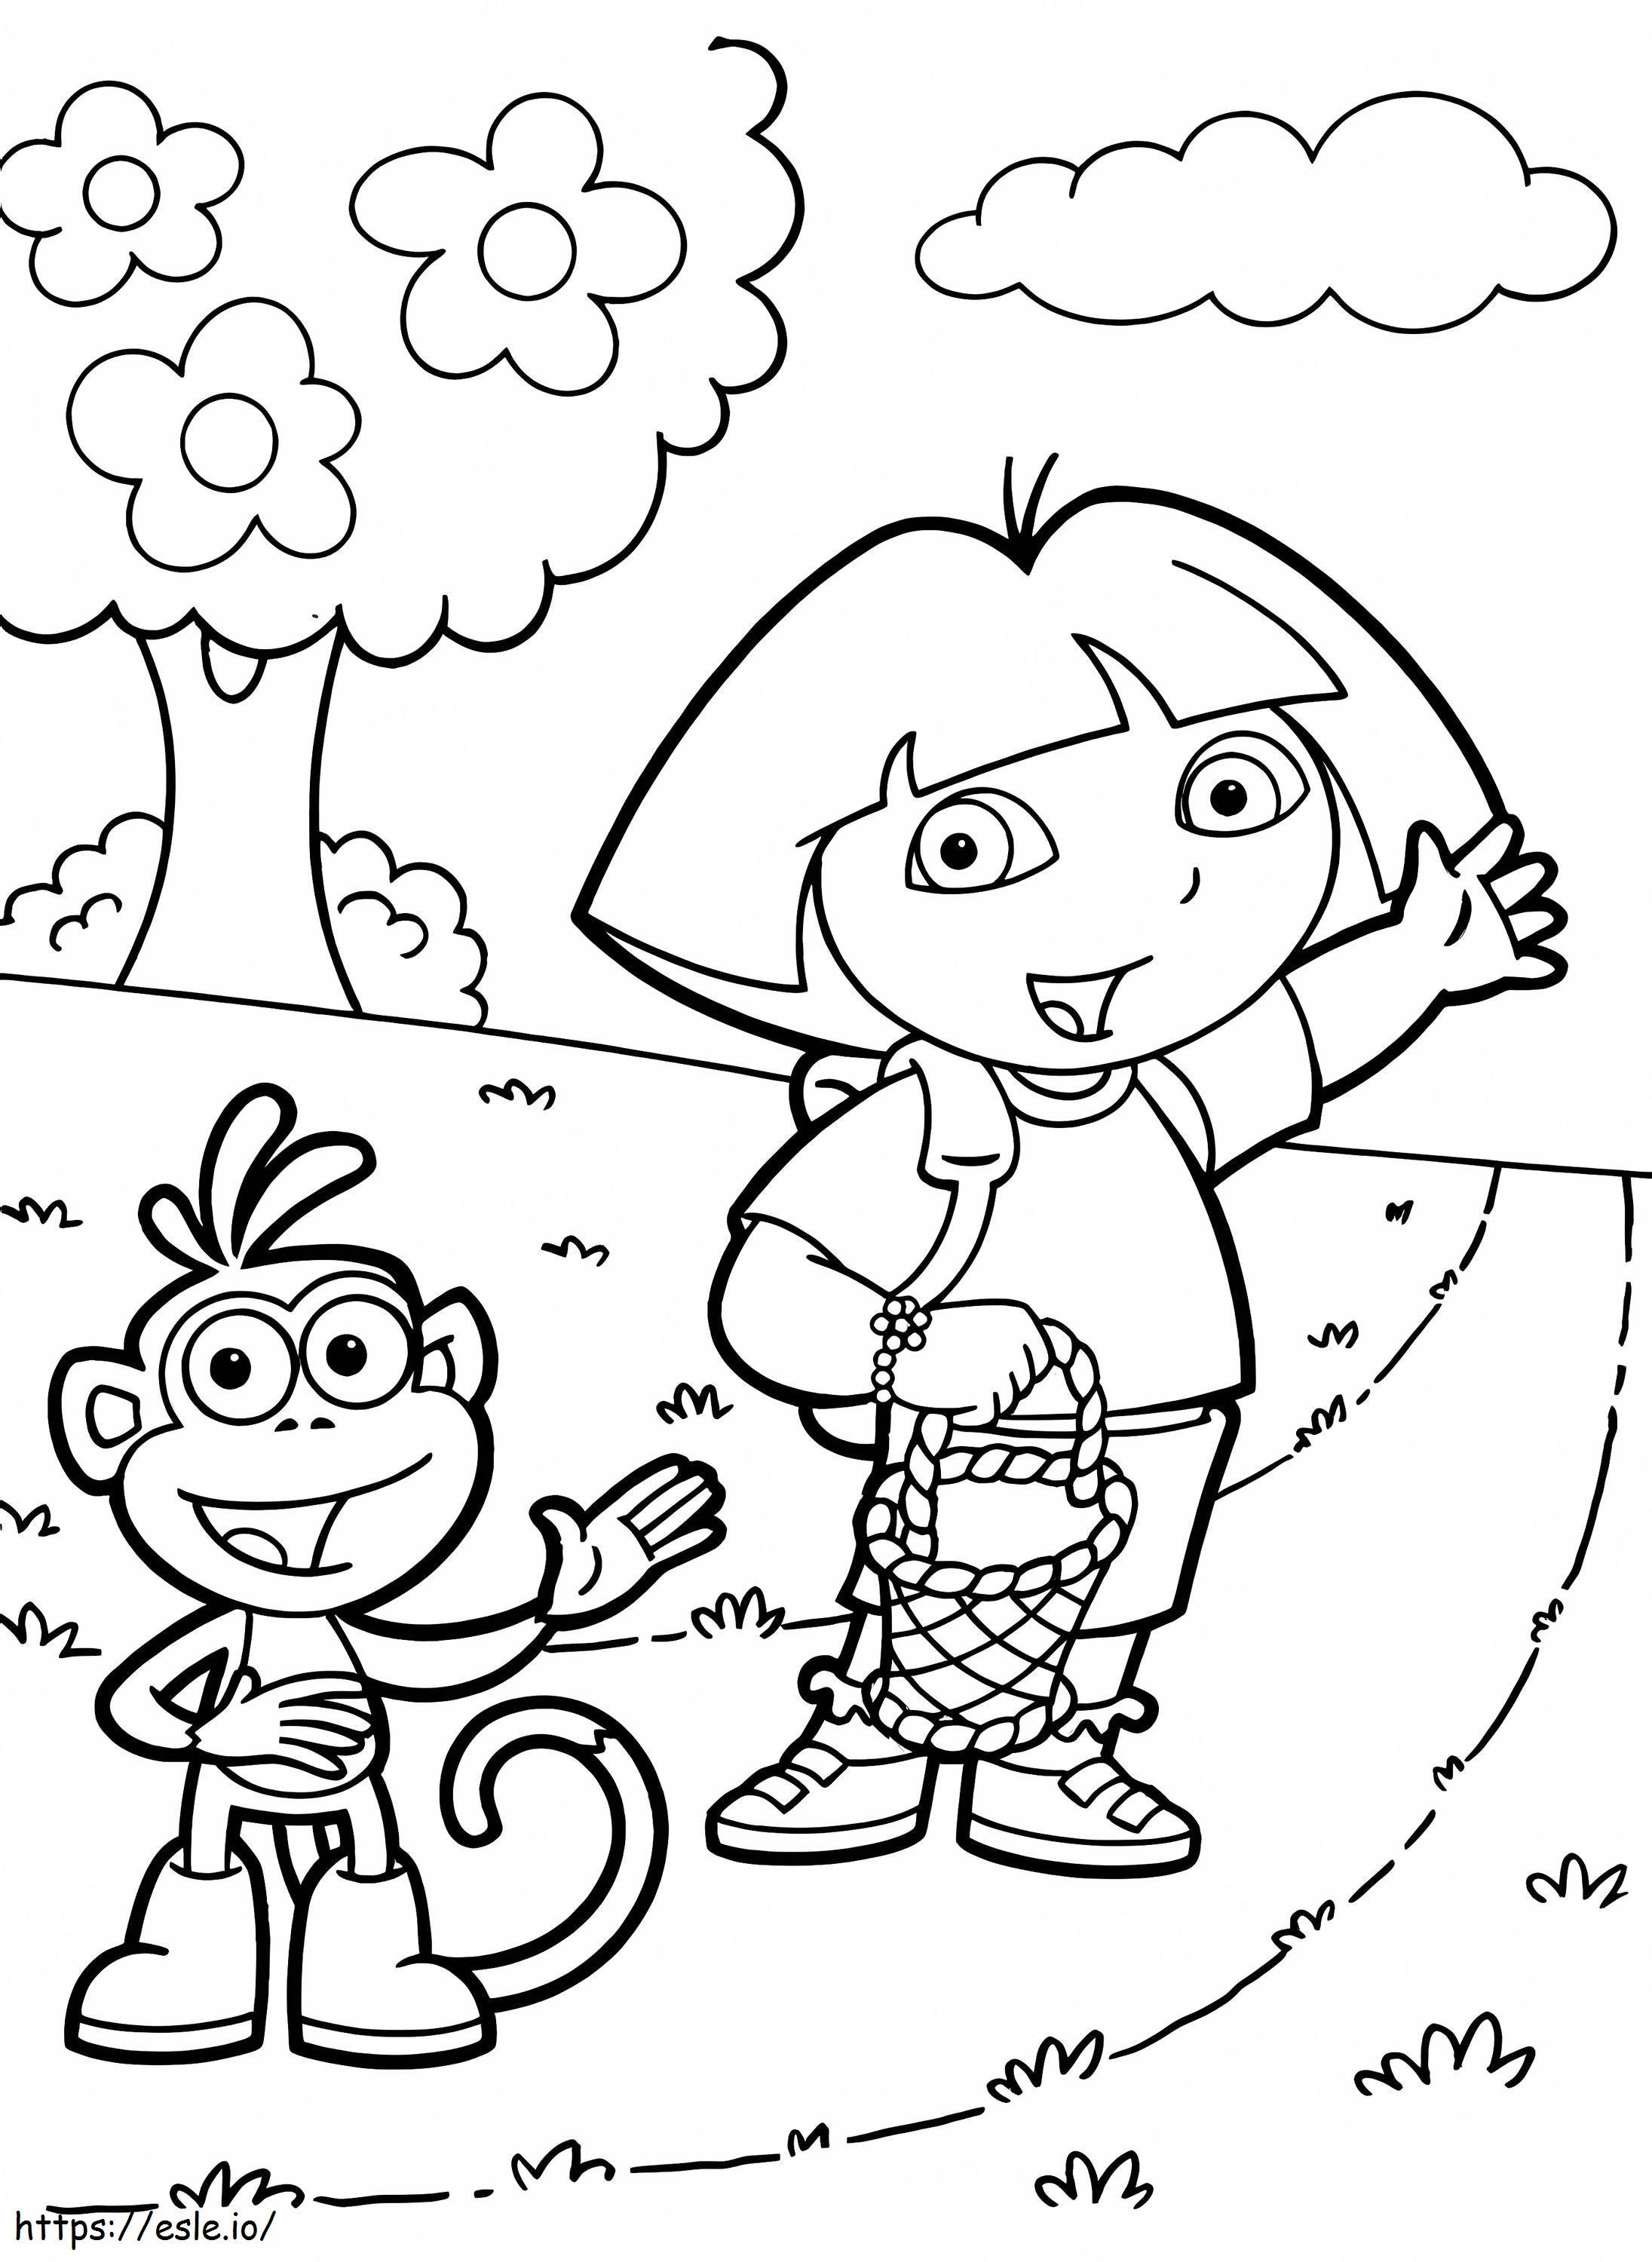 Dora e Boots vanno a fare un picnic da colorare